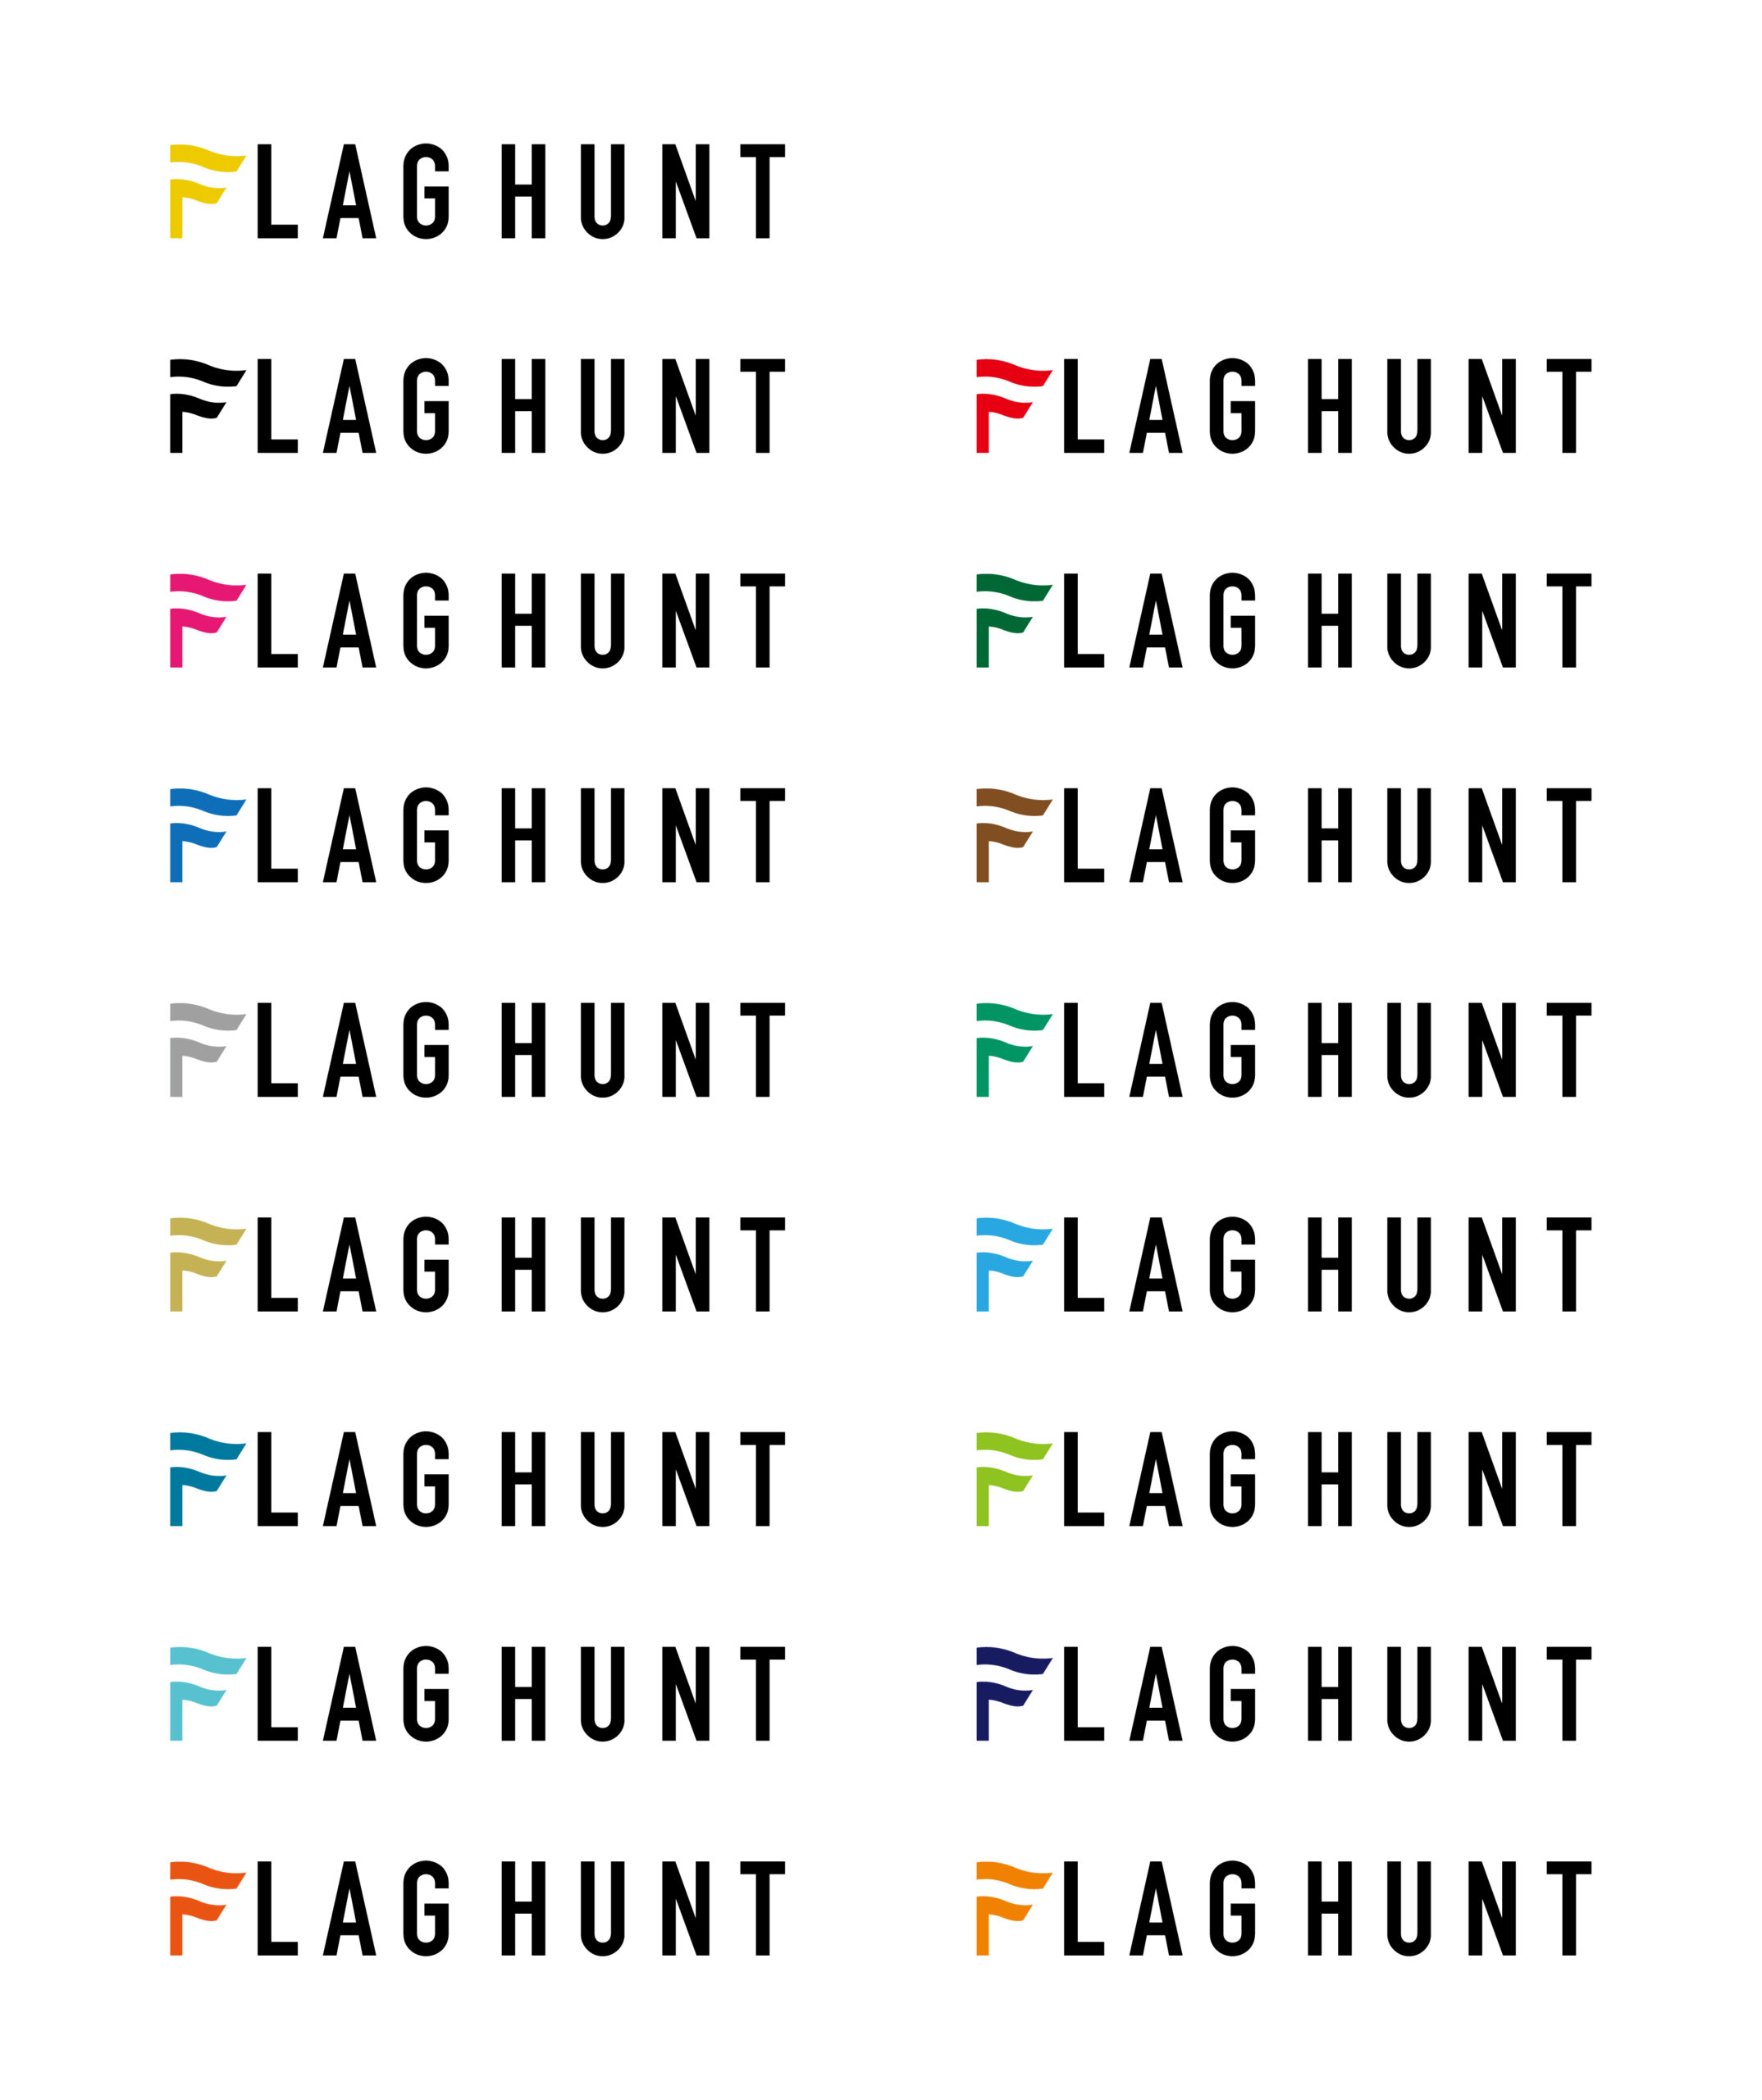 FLAGHUNT_design_3